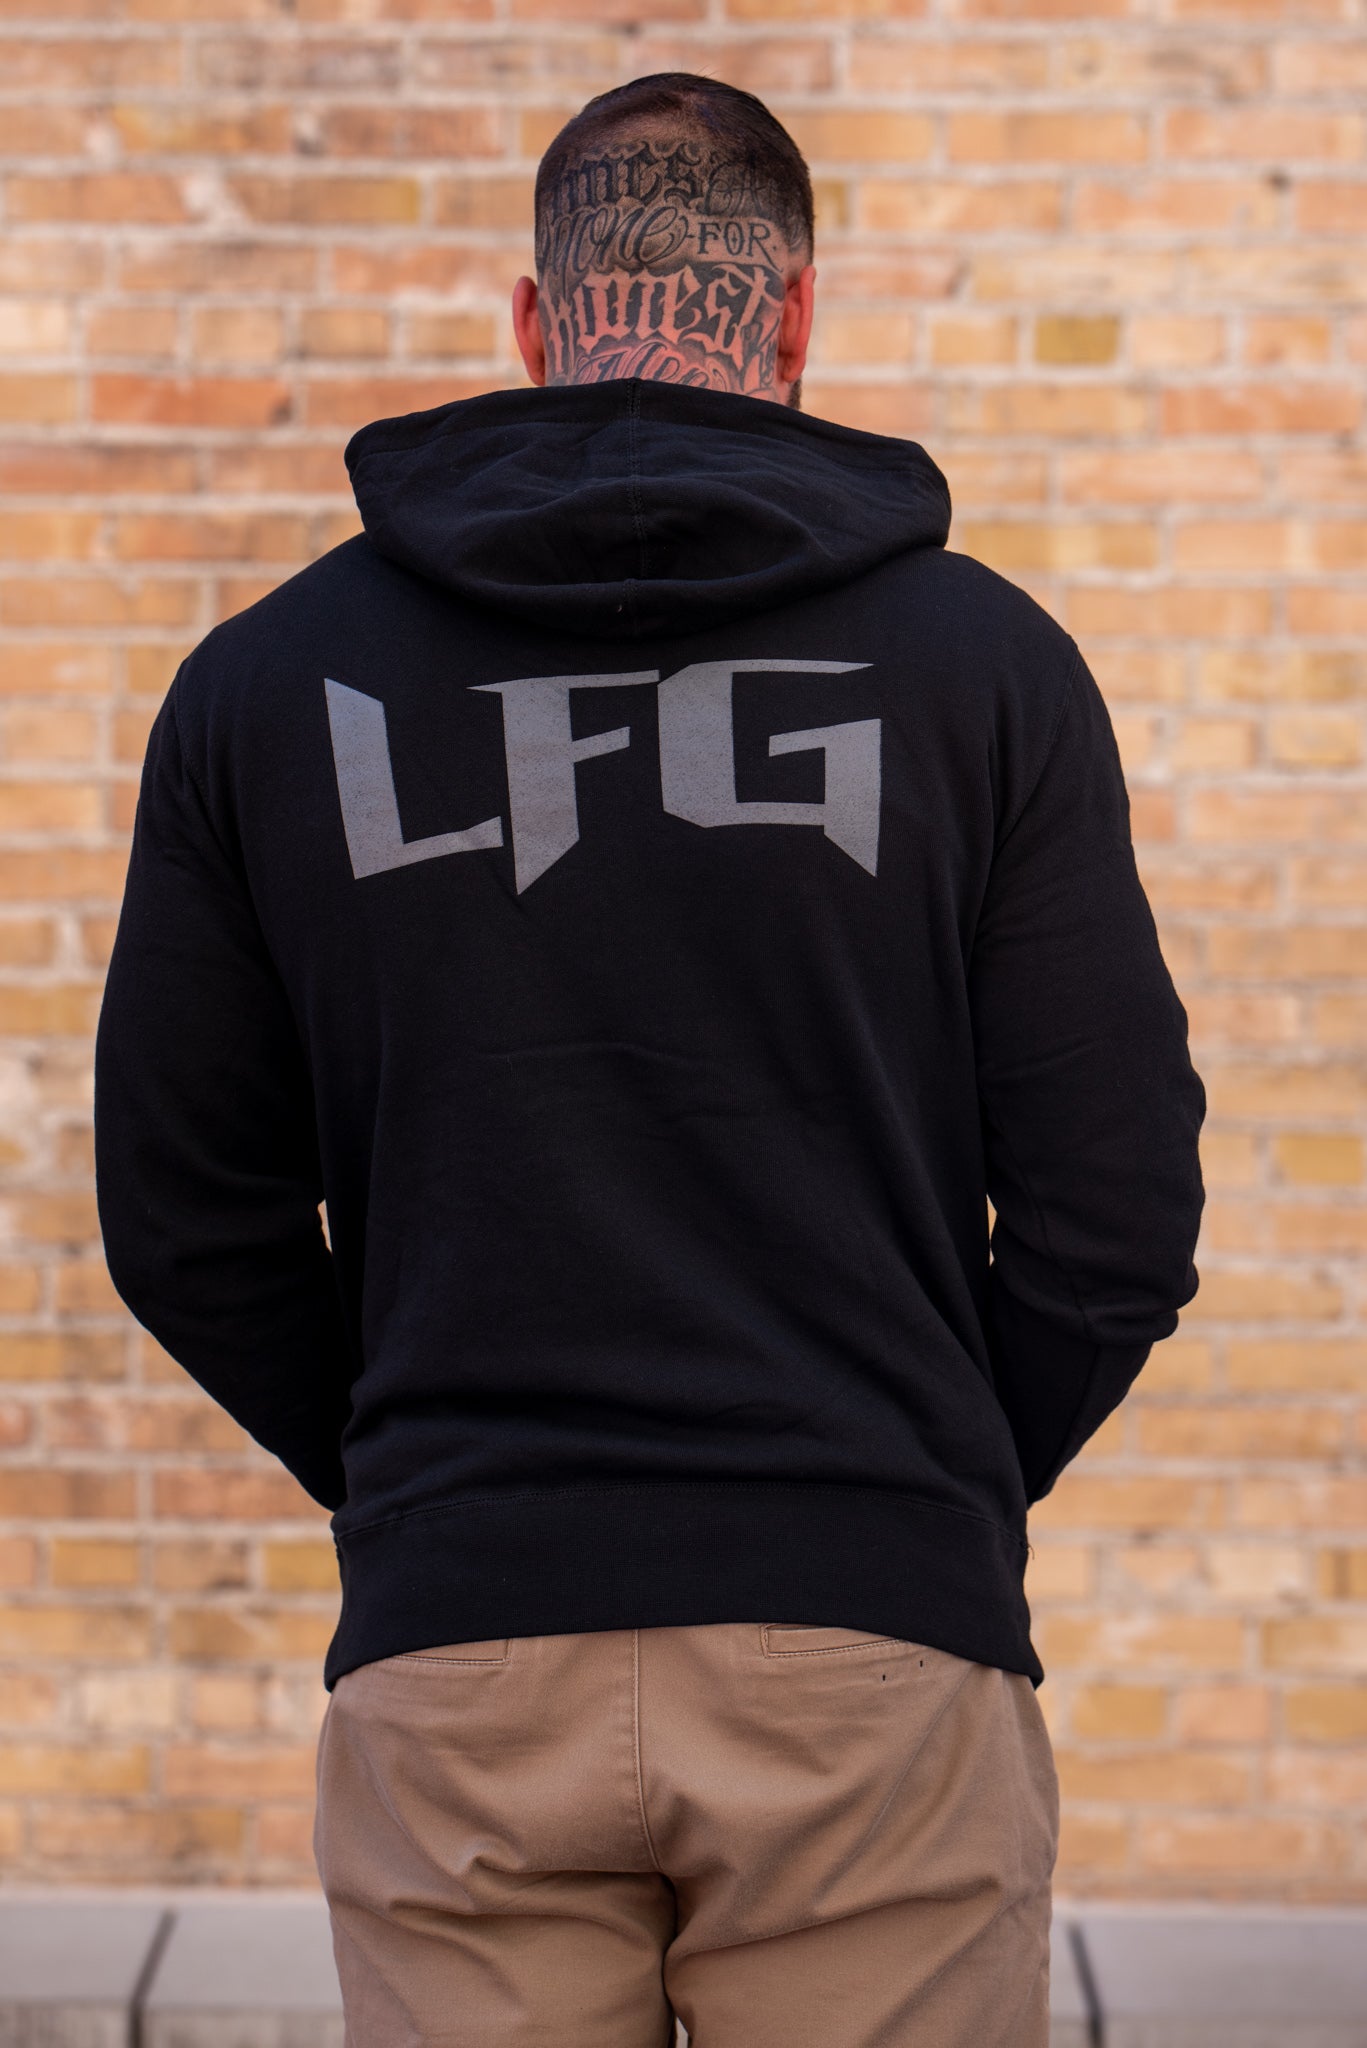 LFG Unisex Zip Up Sweatshirt